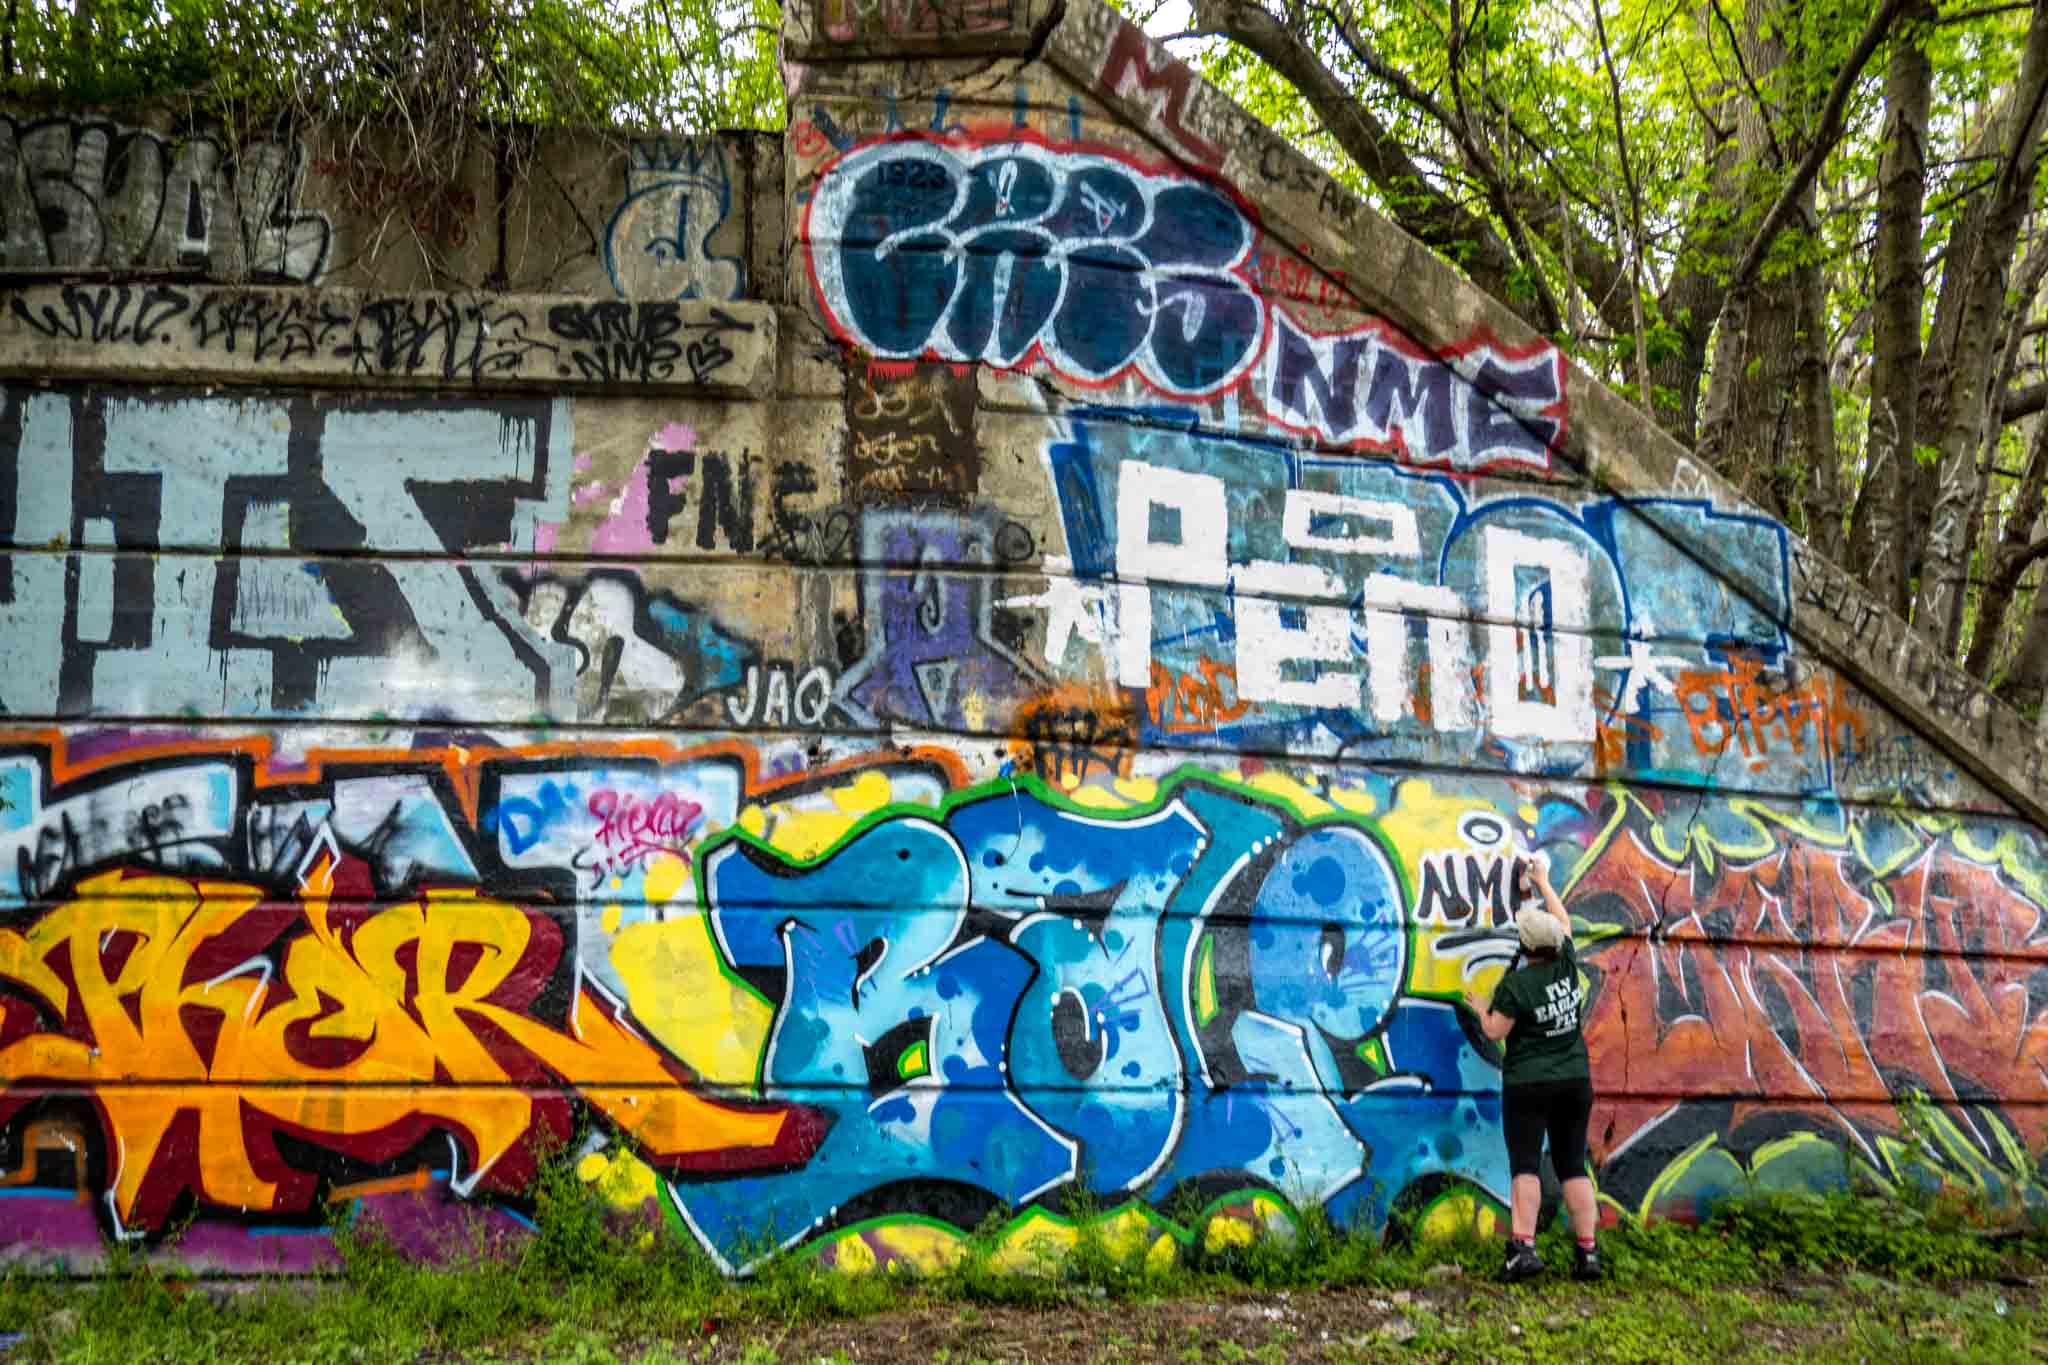 Person tagging graffiti pier